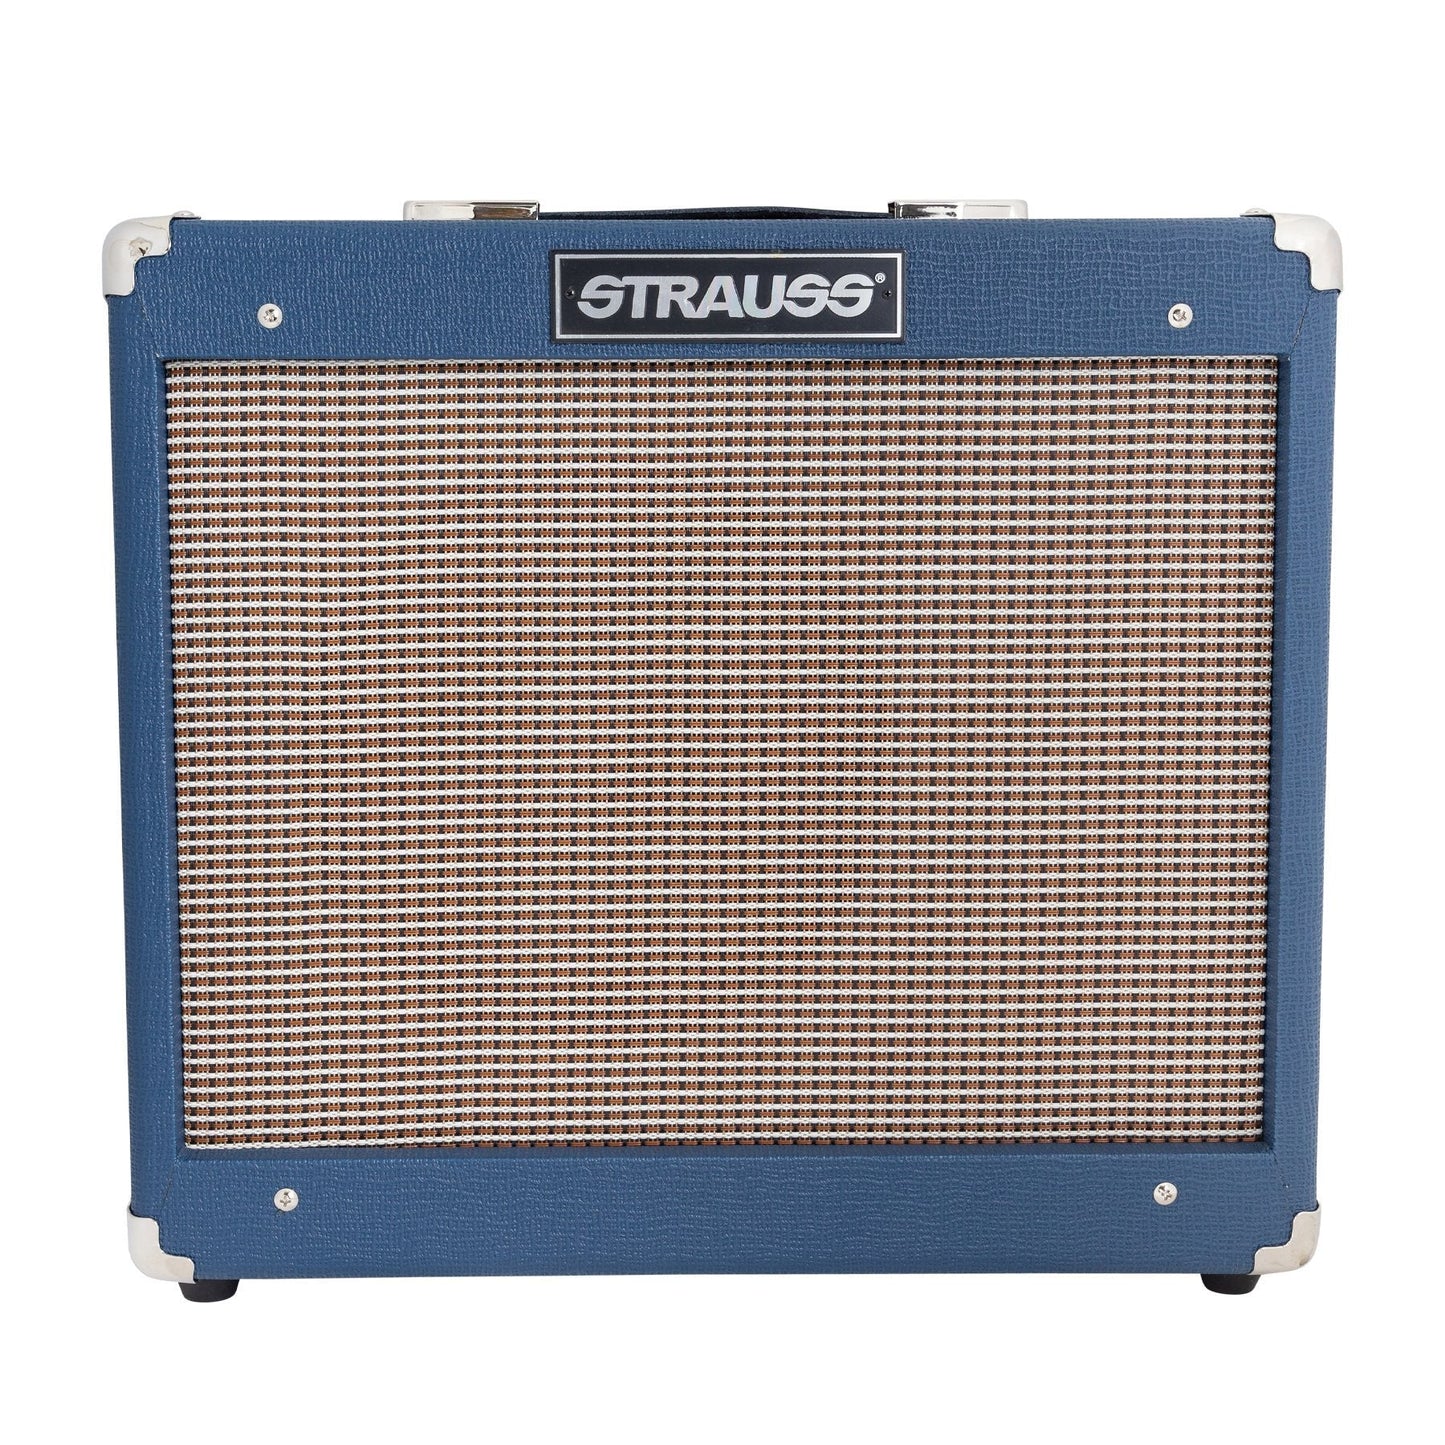 Strauss SVT-15R 15 Watt Combo Valve Amplifier with Reverb (Blue)